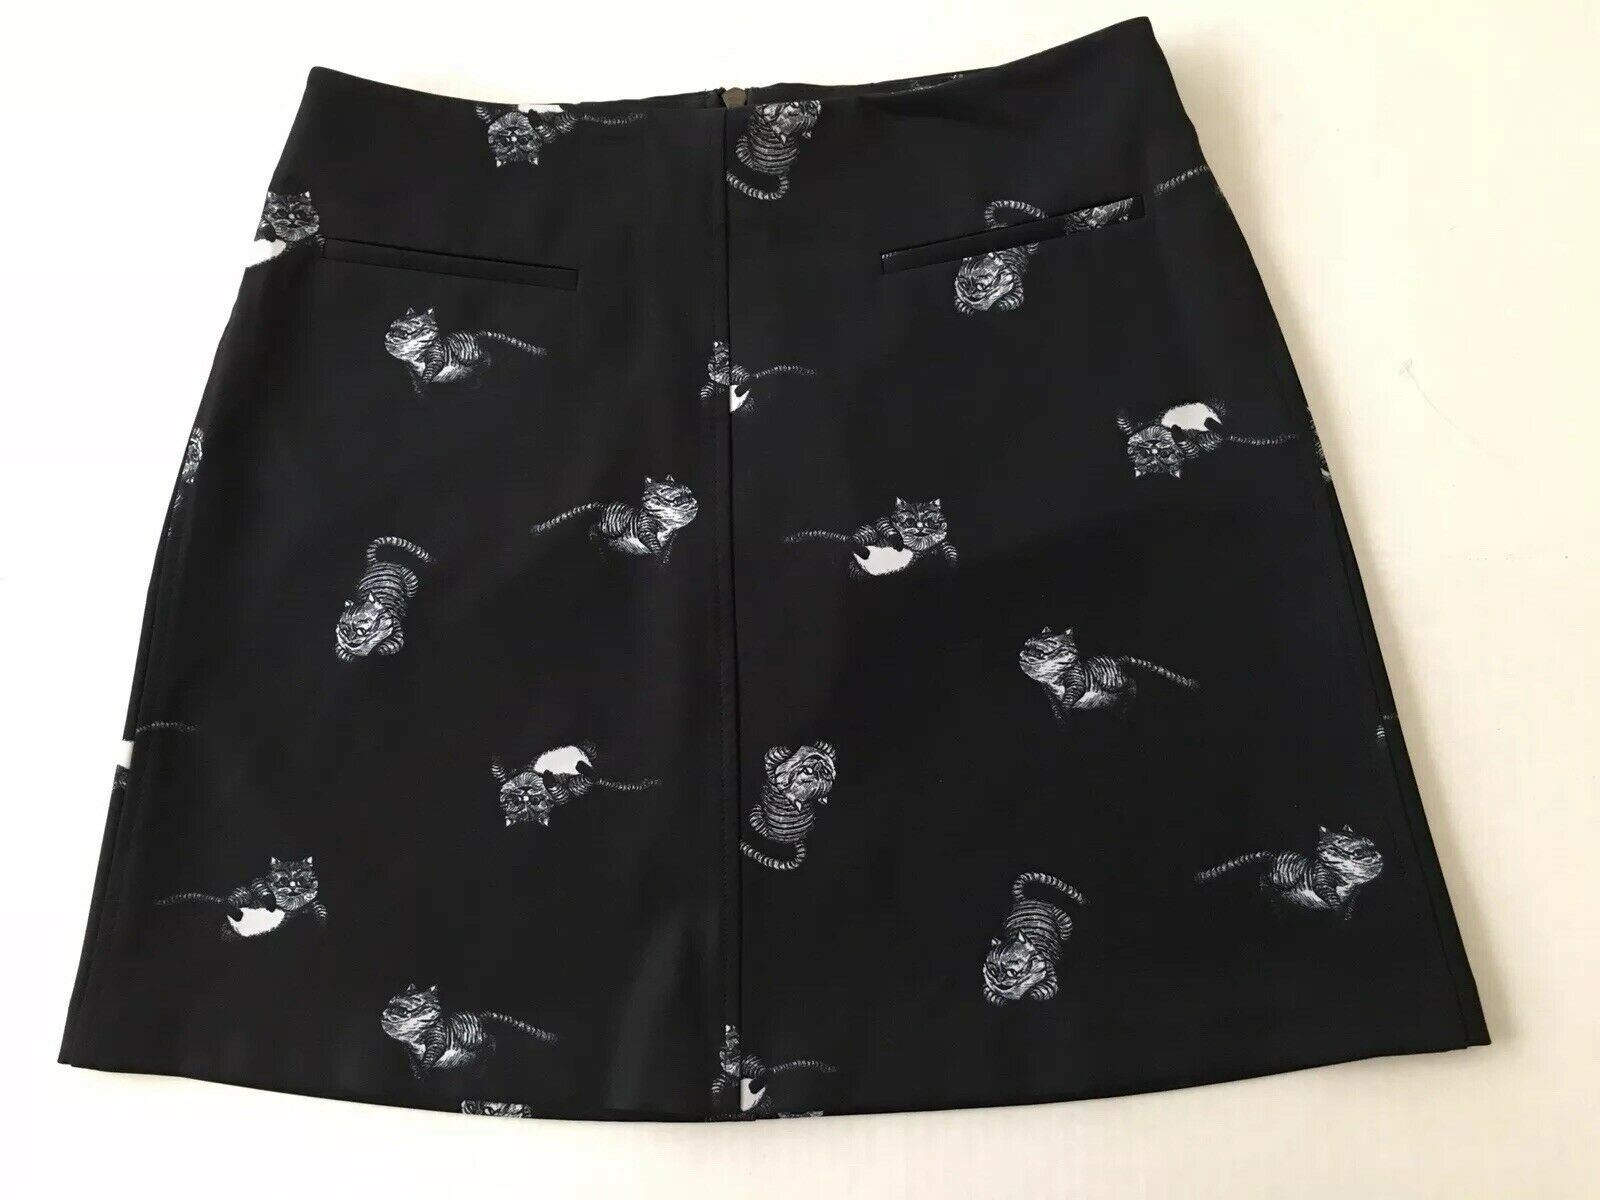 Miniskirt - HD Wallpaper 